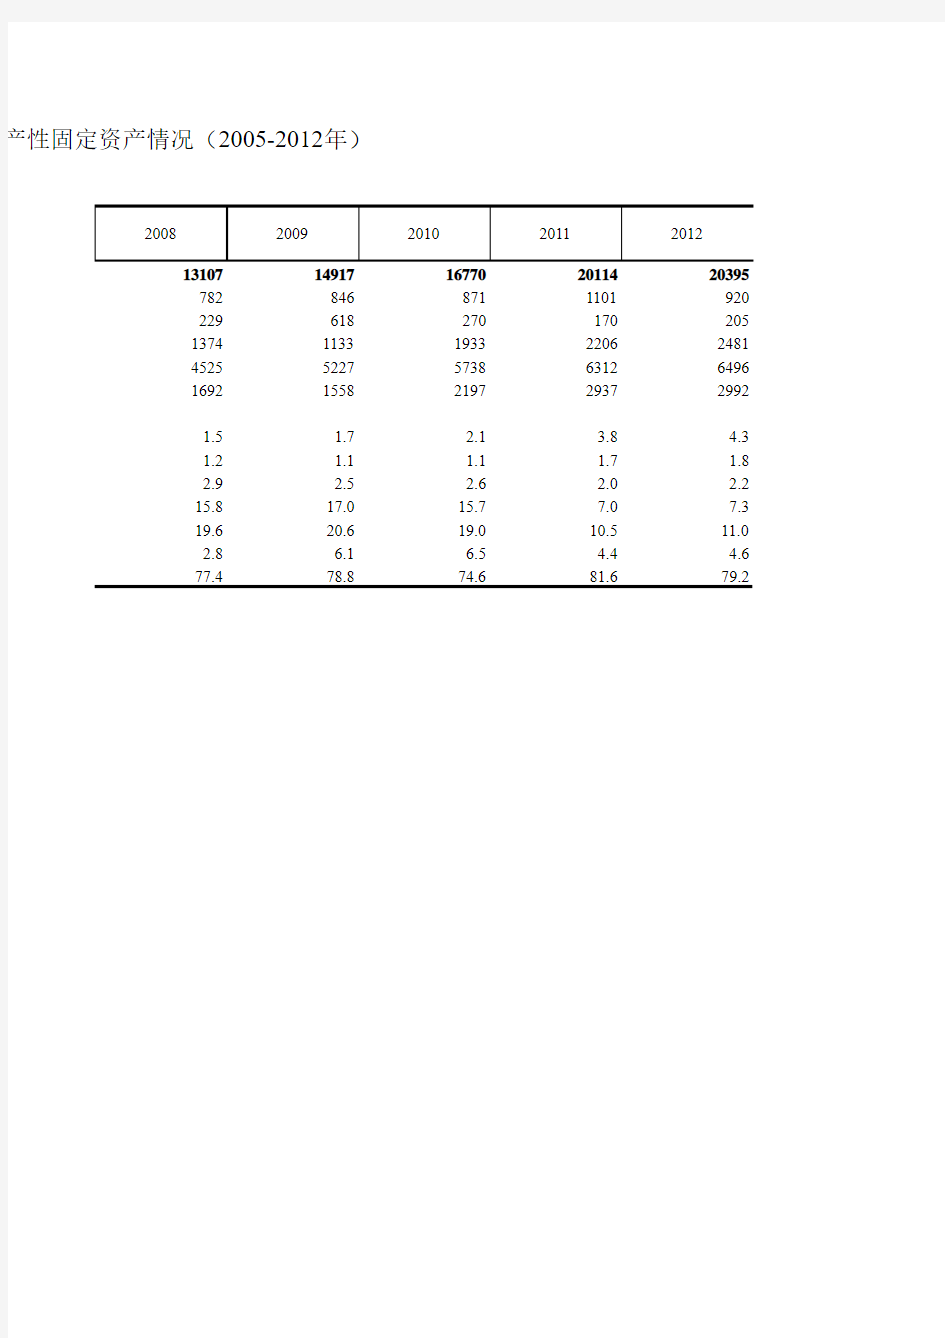 5-45 农村居民家庭拥有生产性固定资产情况(2005-2012年)